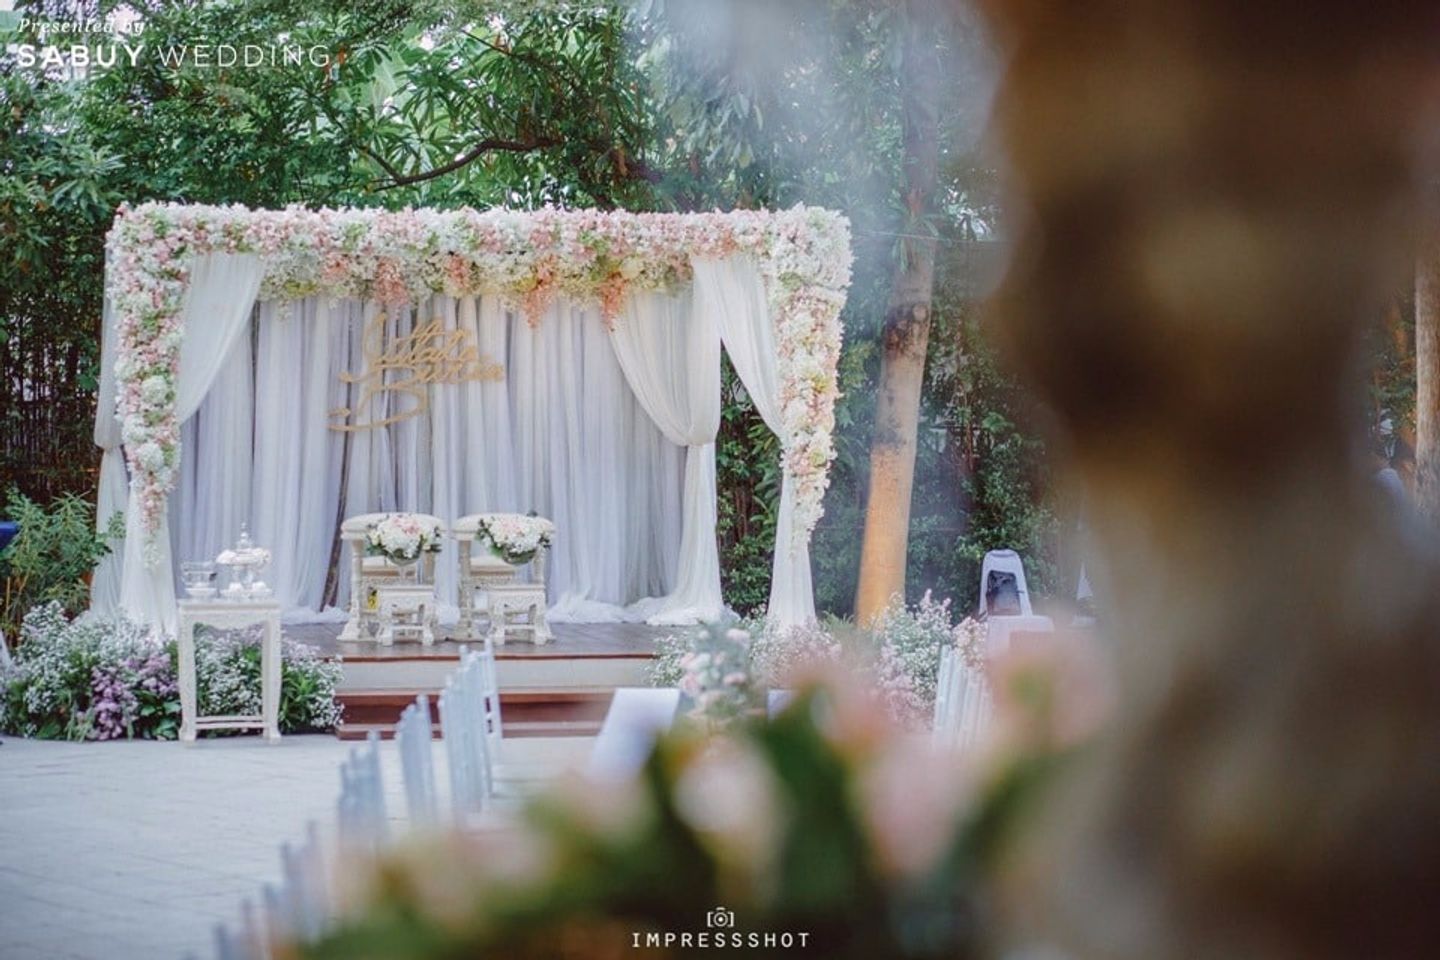 งานหมั้น,พิธีหมั้น,ตกแต่งงานแต่ง,จัดดอกไม้งานแต่ง,backdrop งานแต่ง รีวิวงานแต่งสวยหรูด้วย Long table หวานซึ้งสื่อรักดอกลาเวนเดอร์ @Bangkok Garden Studio